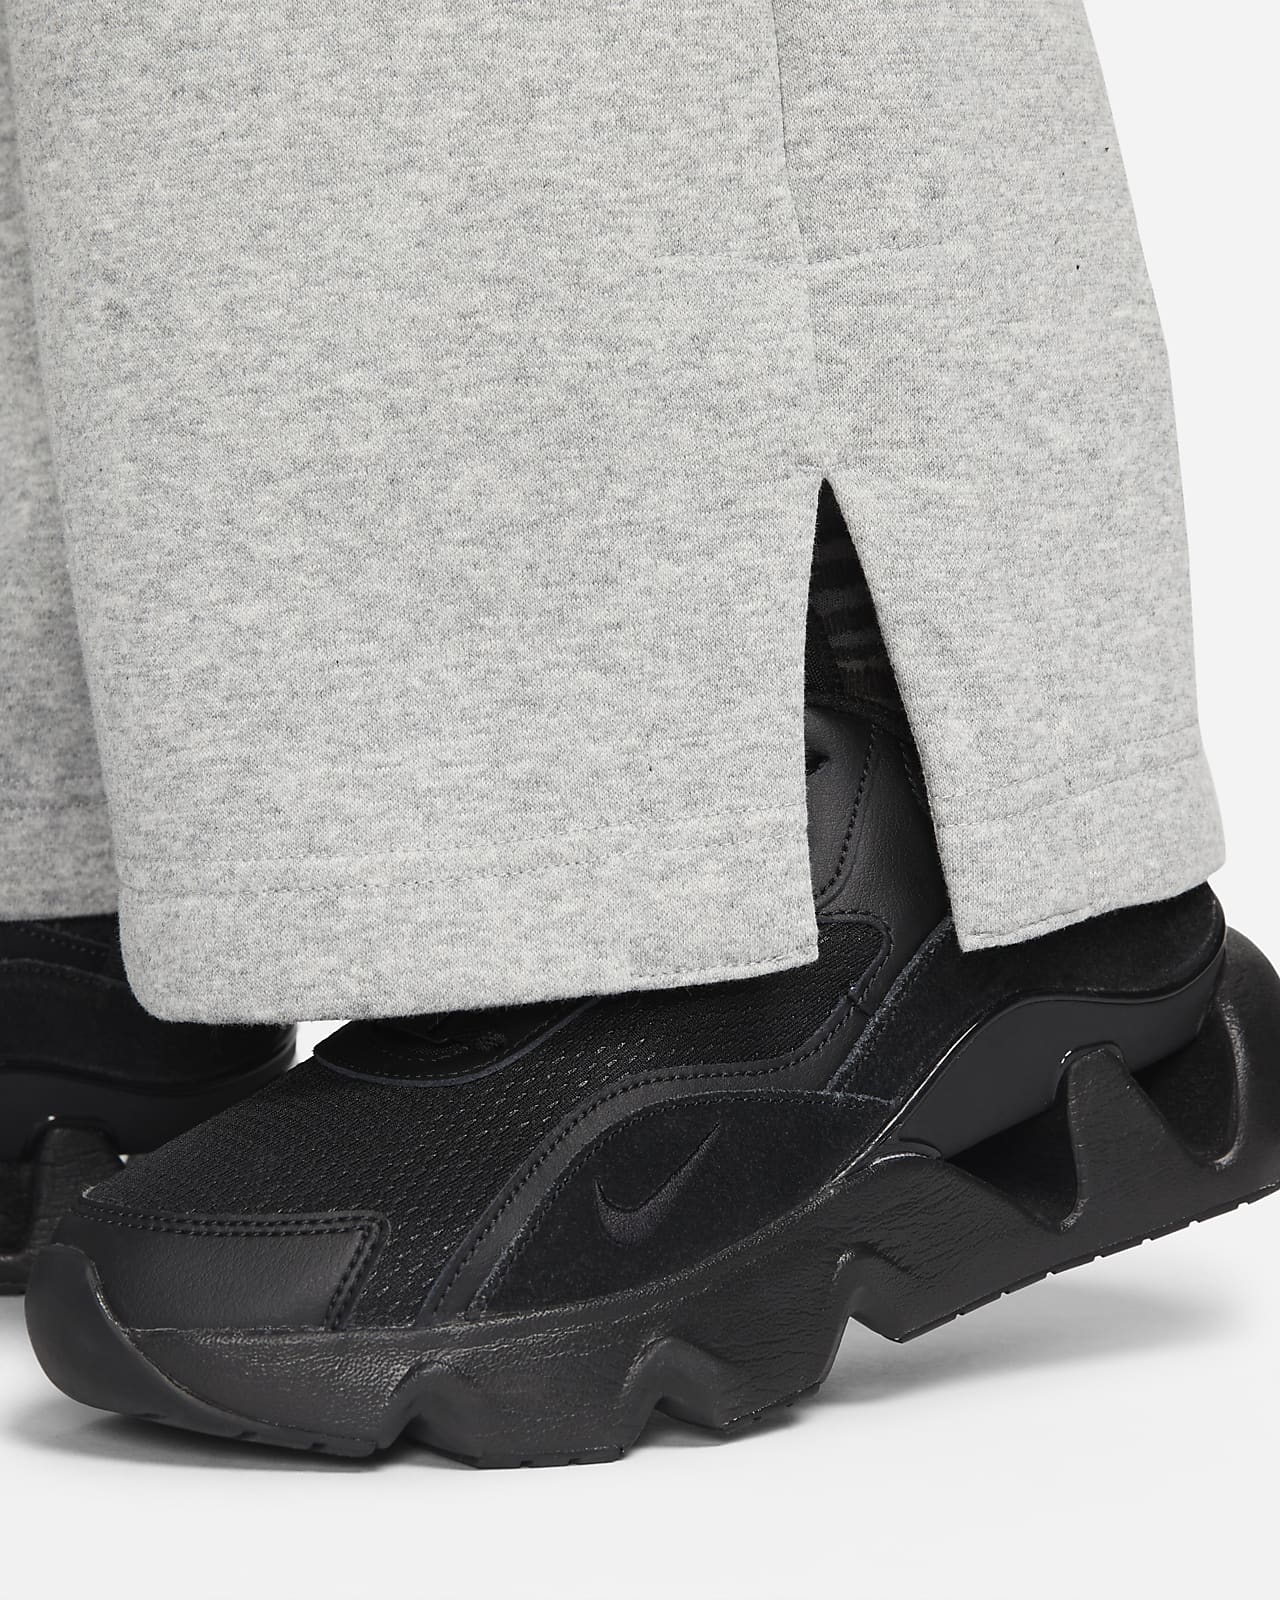 Nike Sportswear Phoenix Fleece Women's High-Waisted Wide-Leg Tracksuit  Bottoms (Plus Size). Nike LU